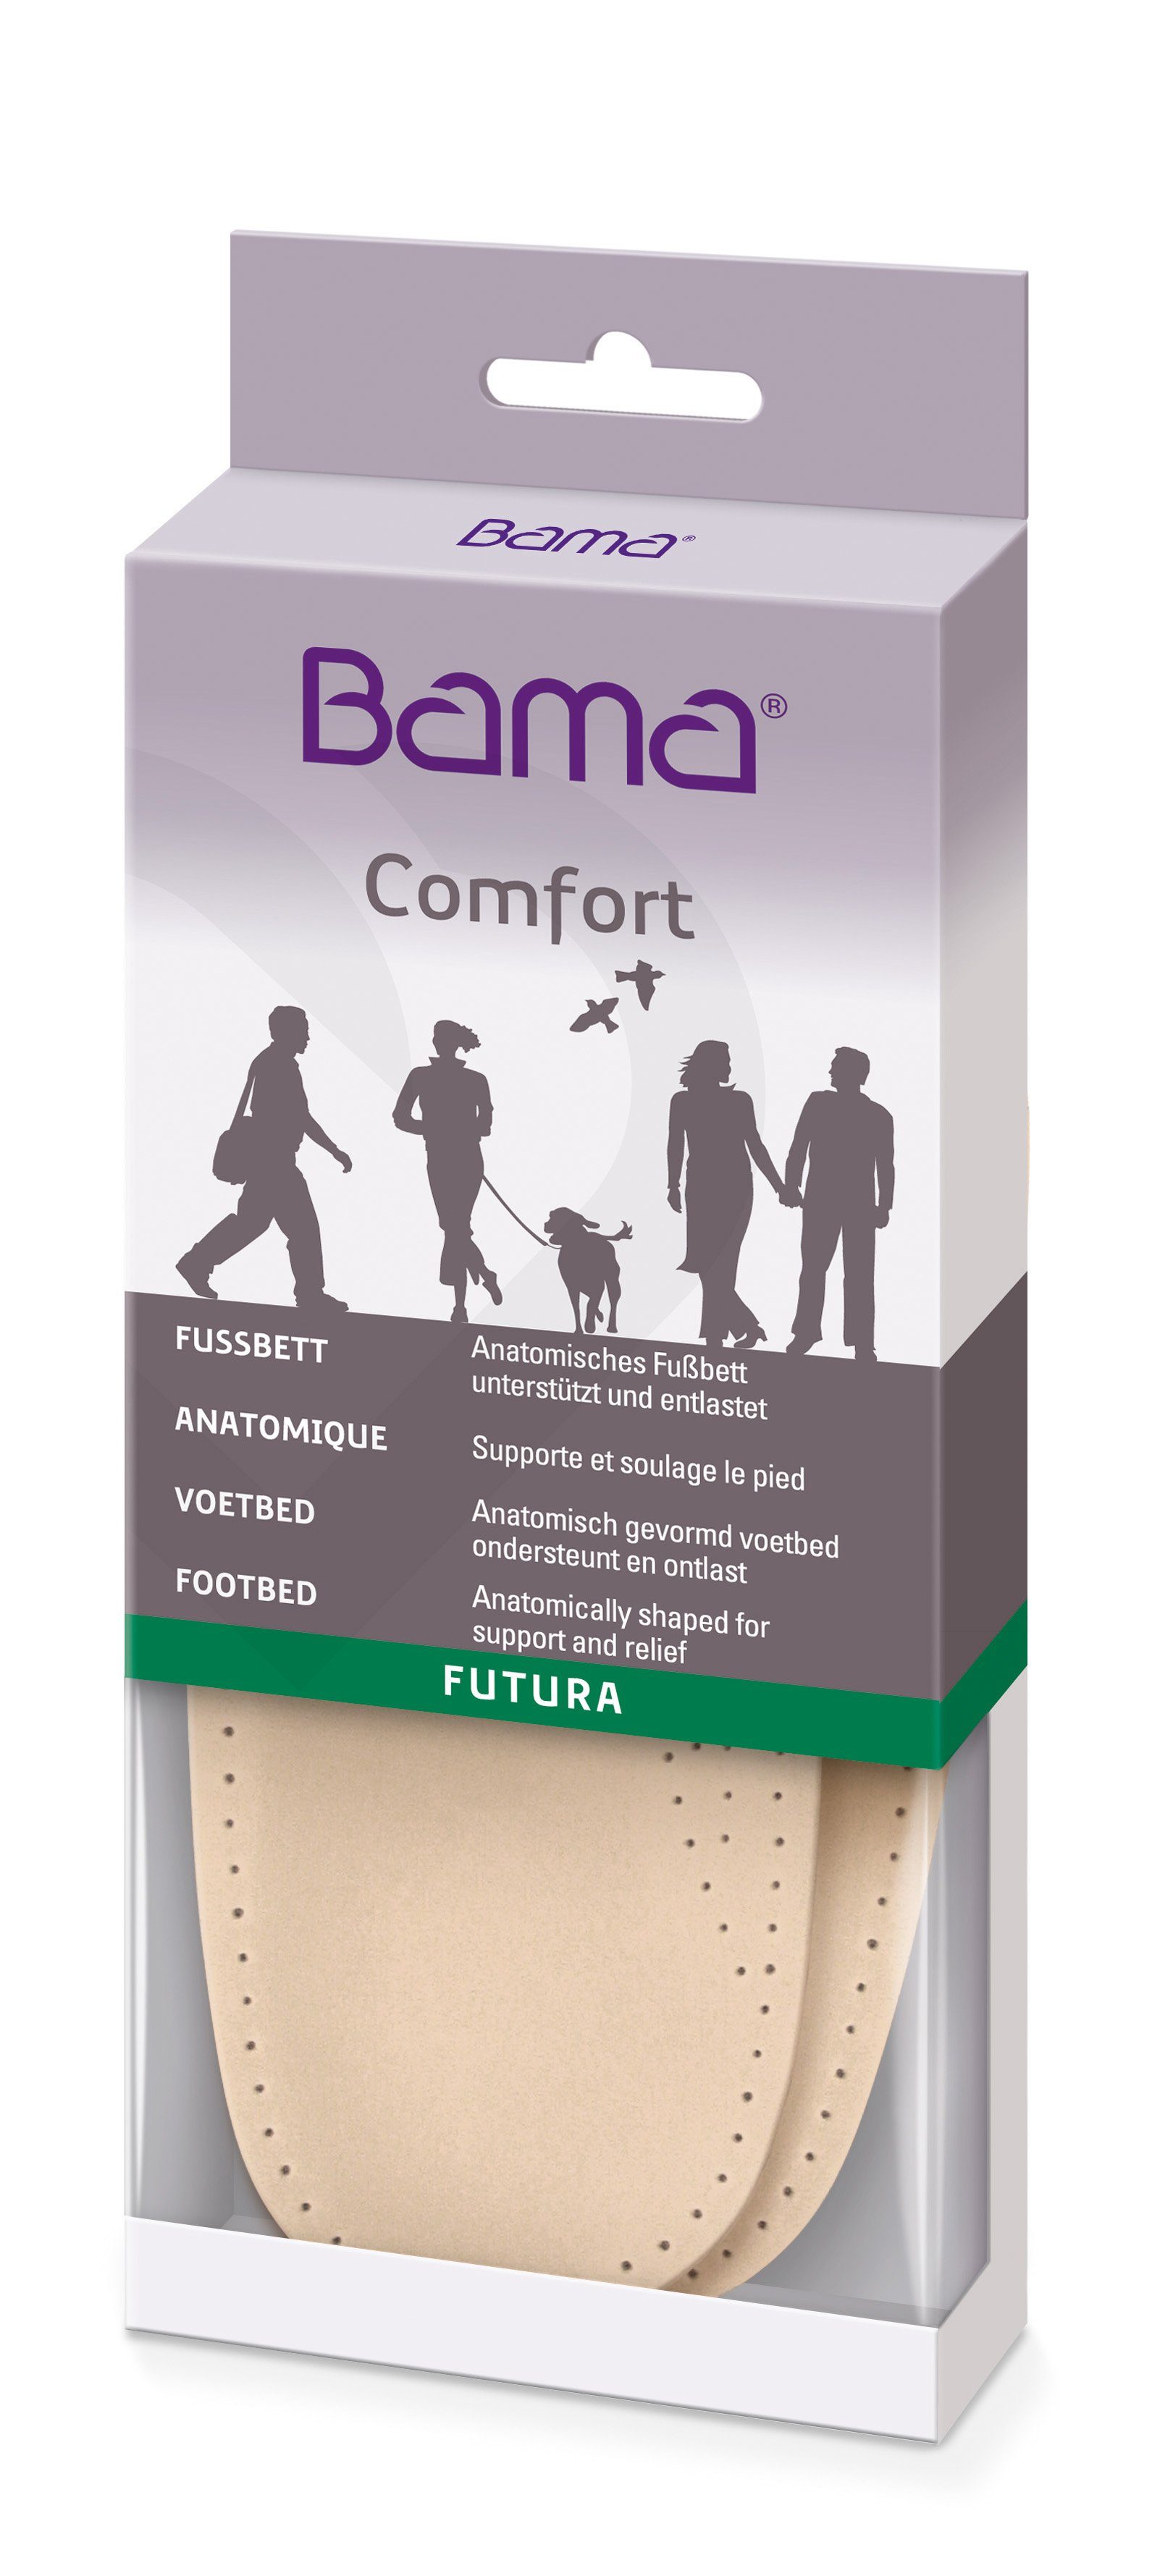 BAMA Group Fußbetteinlage Futura Extra - Anatomisches 3/4 Fußbett